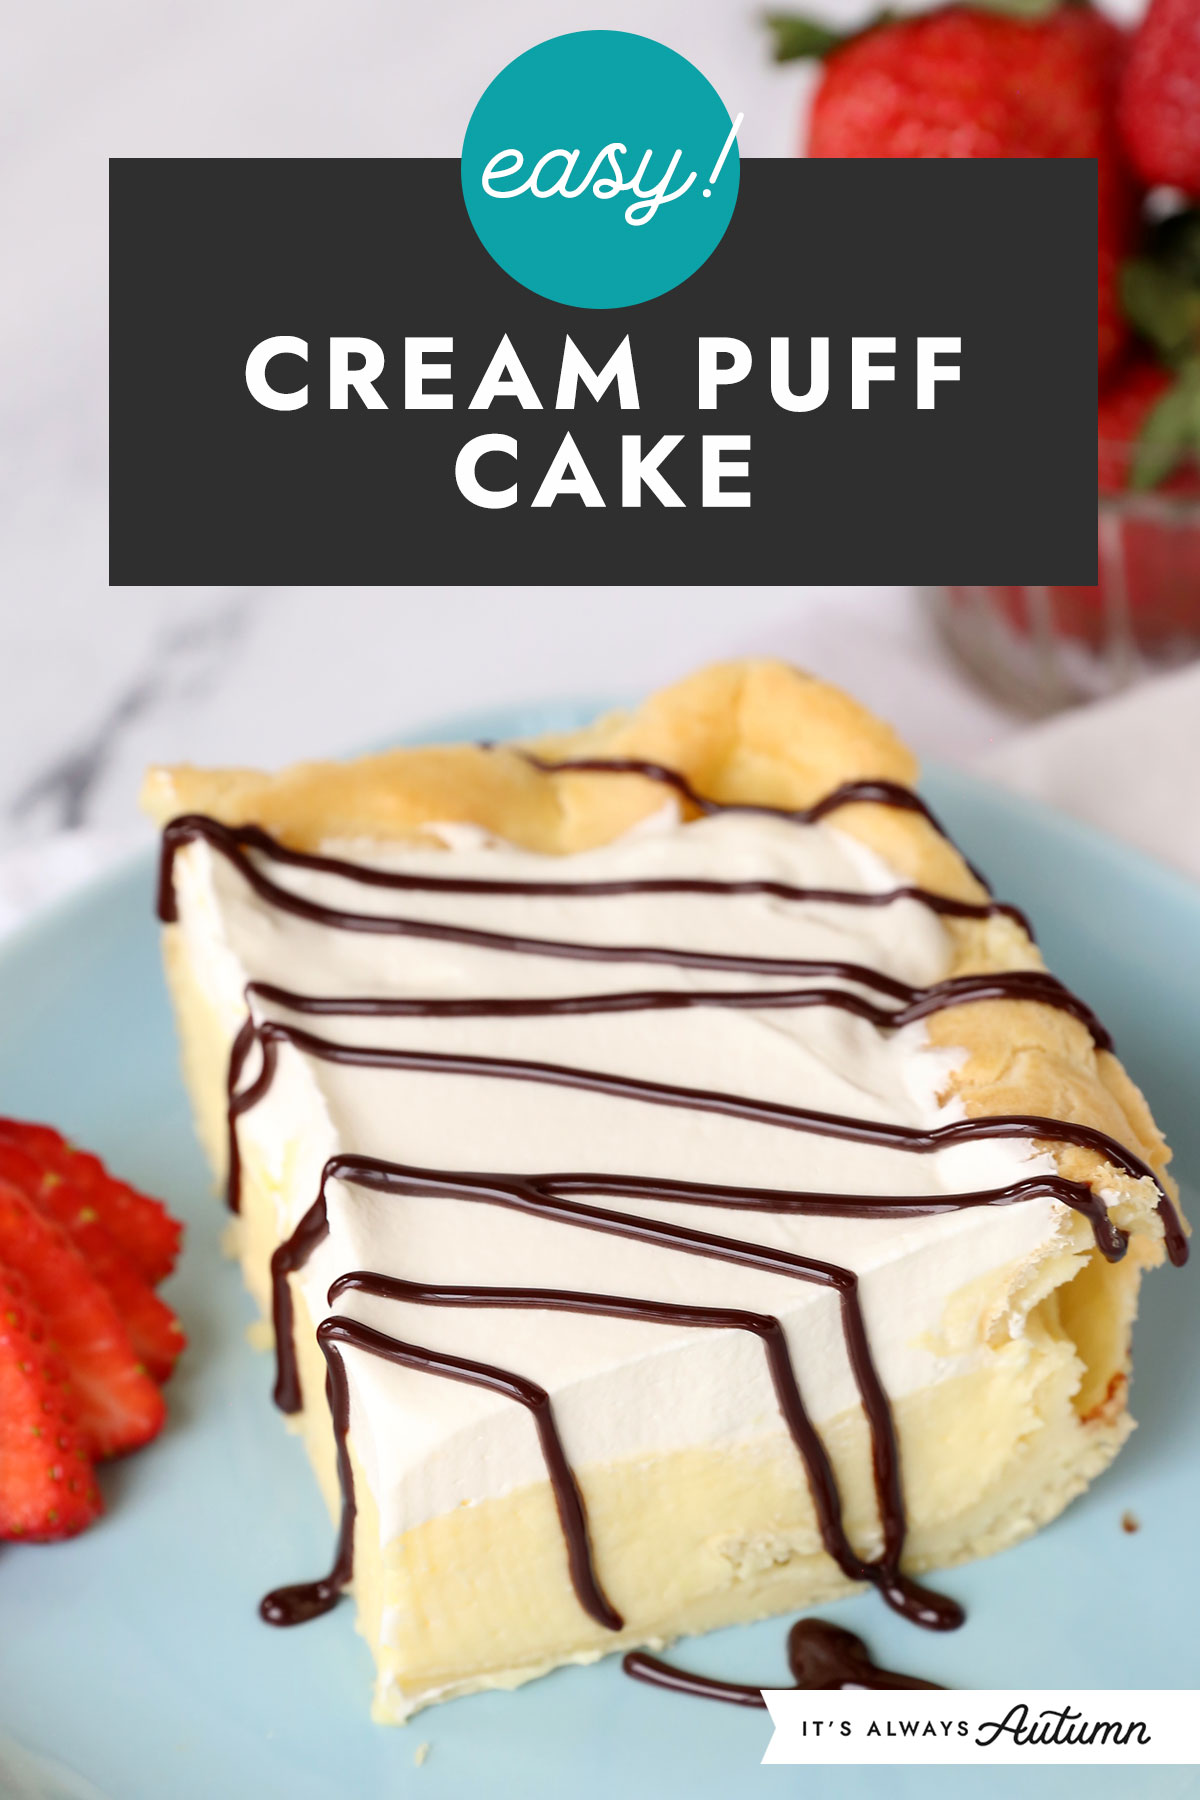 Easy! Cream puff cake.